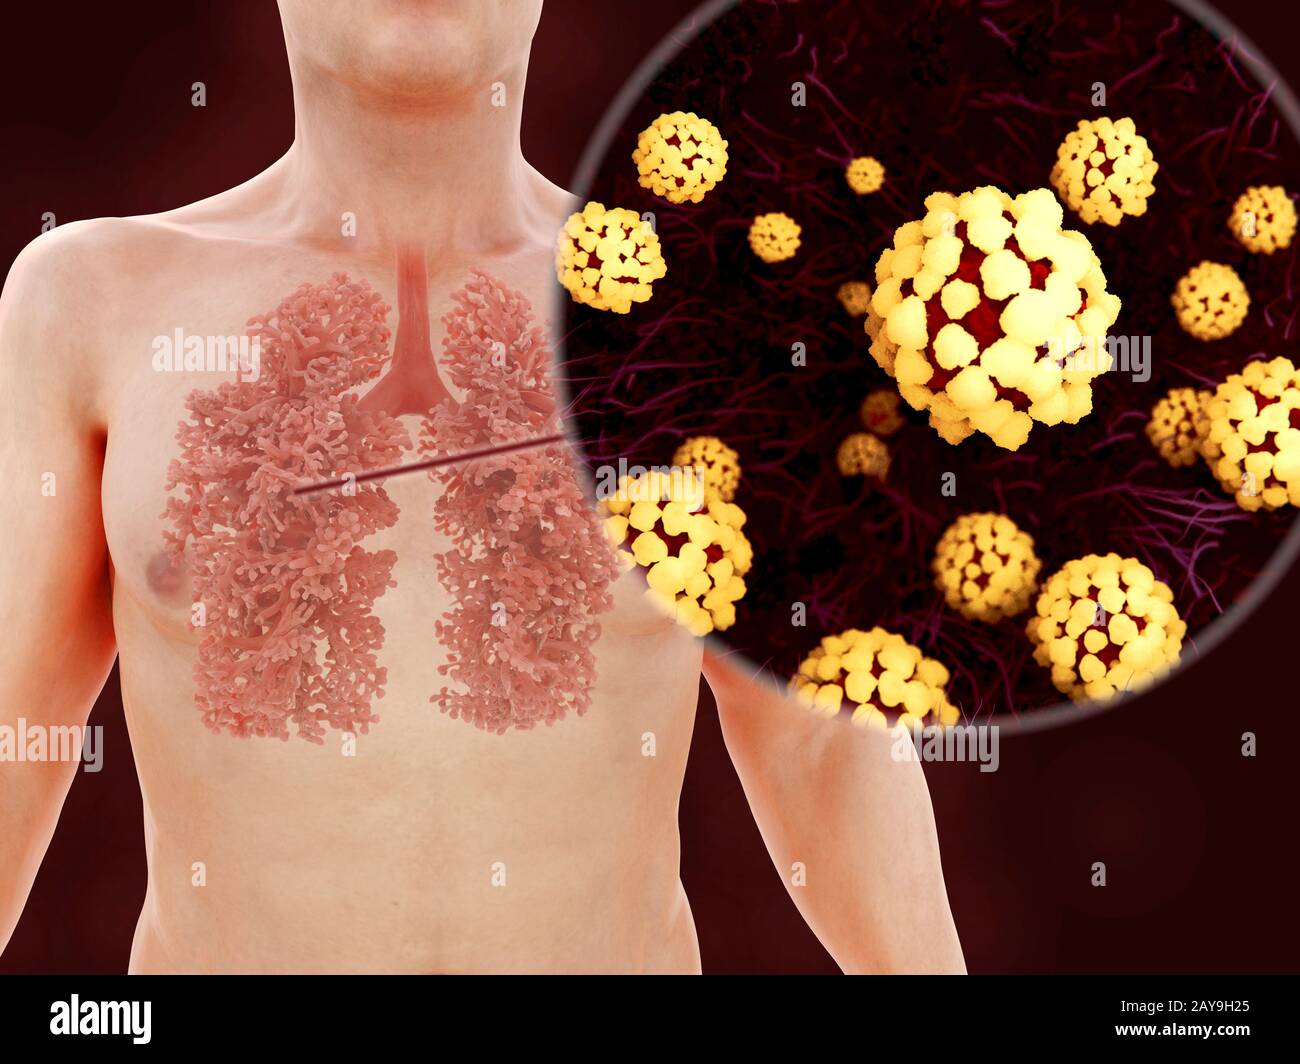 Infektion der Lunge mit Coronavirus, Abbildung Stockfoto